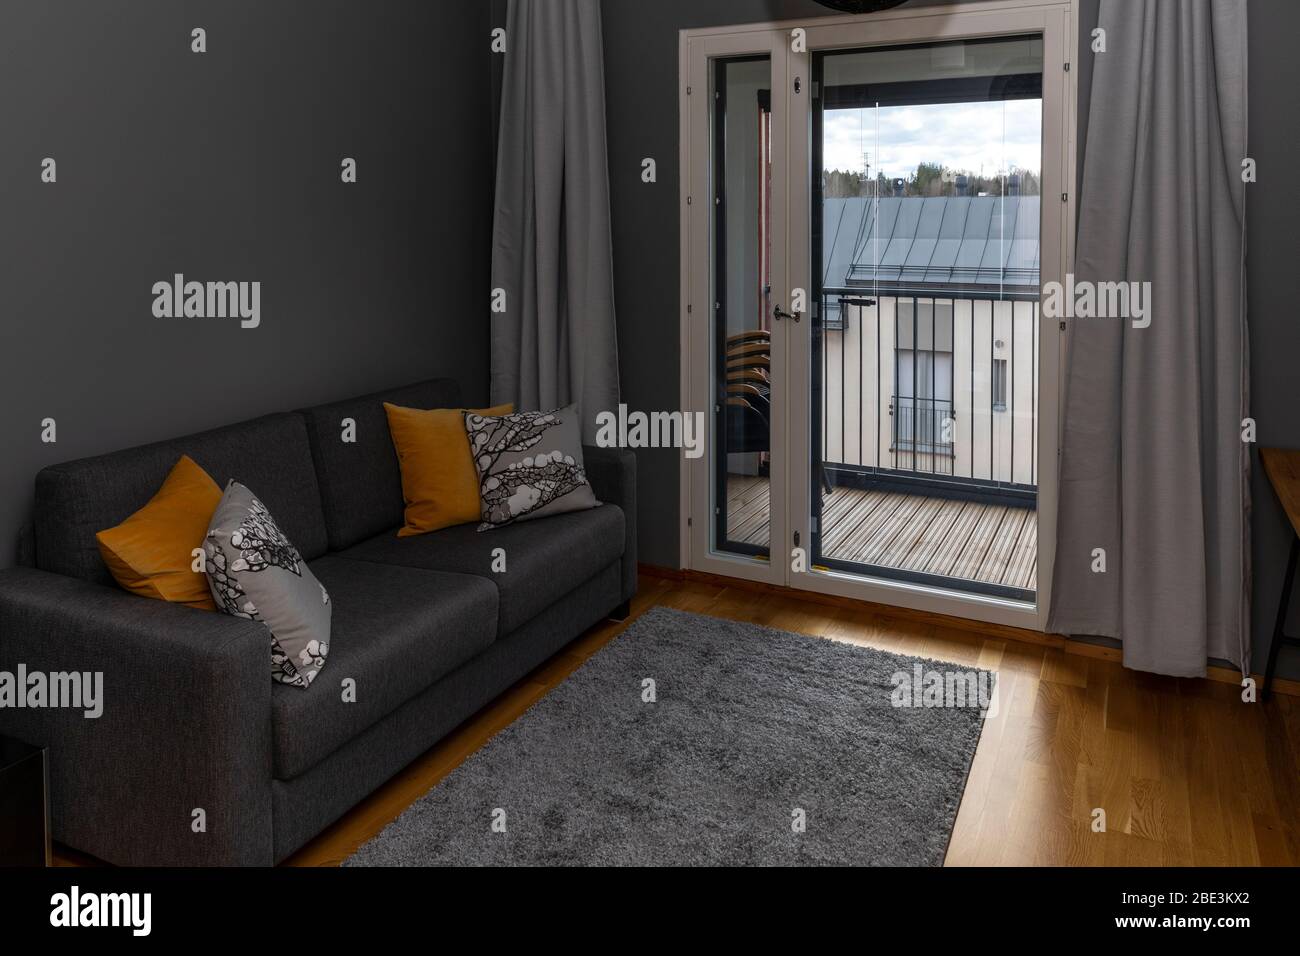 Decorazioni scandinave minimalistiche nella camera da letto Foto Stock